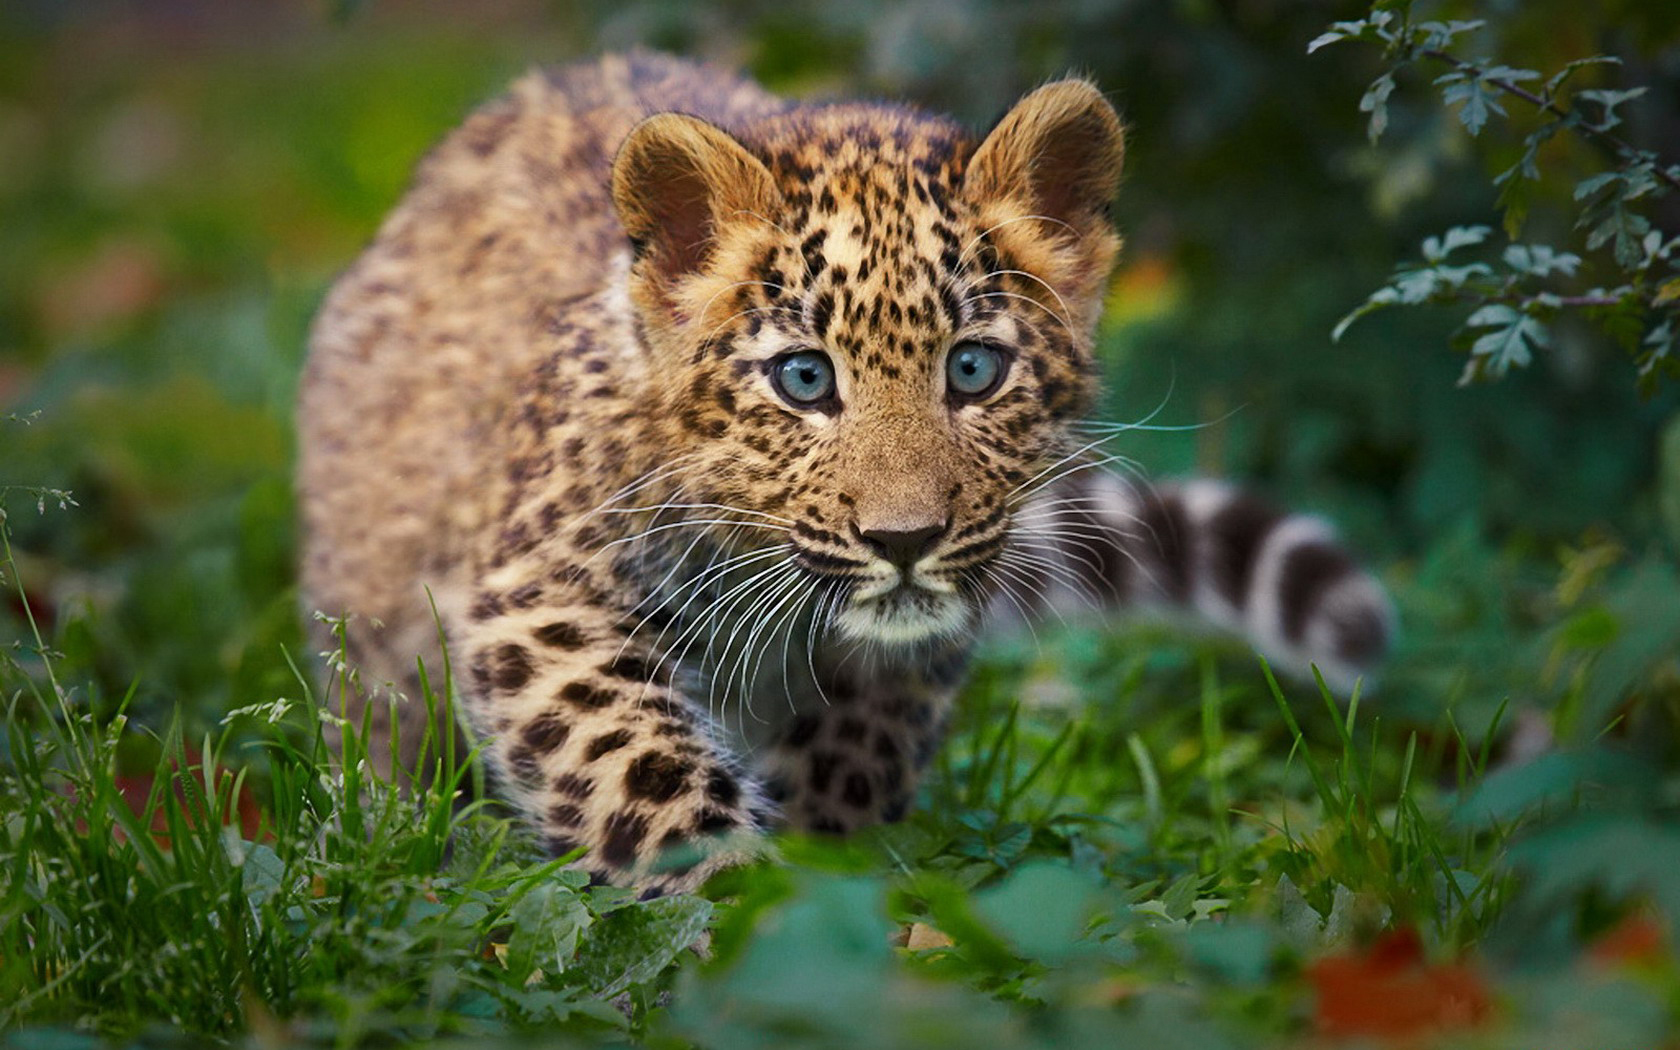 Скачать обои бесплатно Леопард, Животные, Кошки картинка на рабочий стол ПК